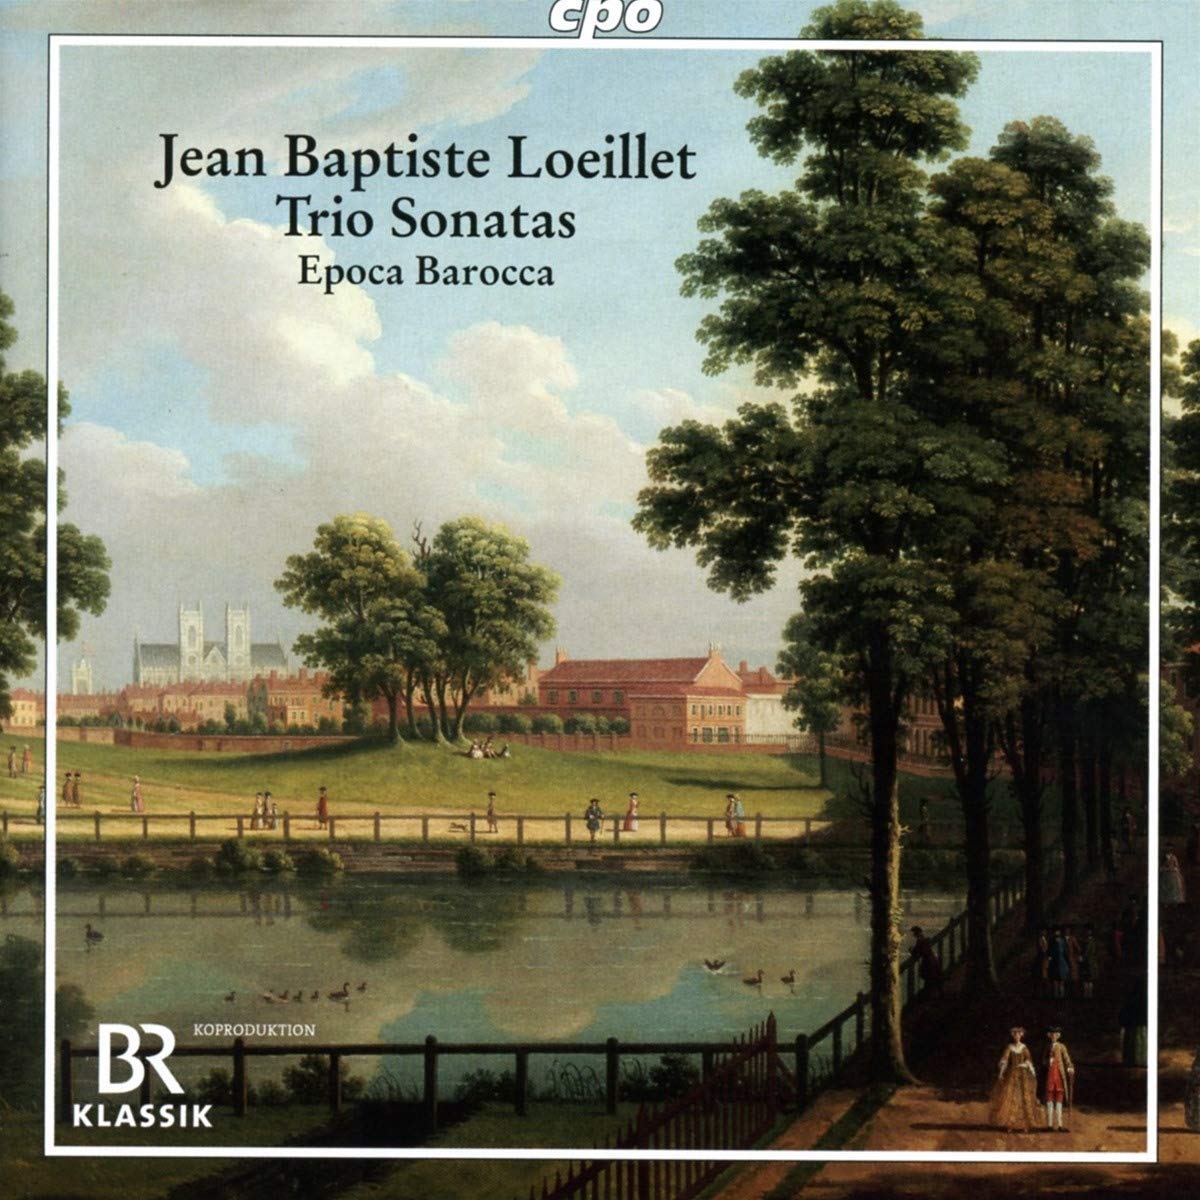 Loeillet Trio sonatas CD cover